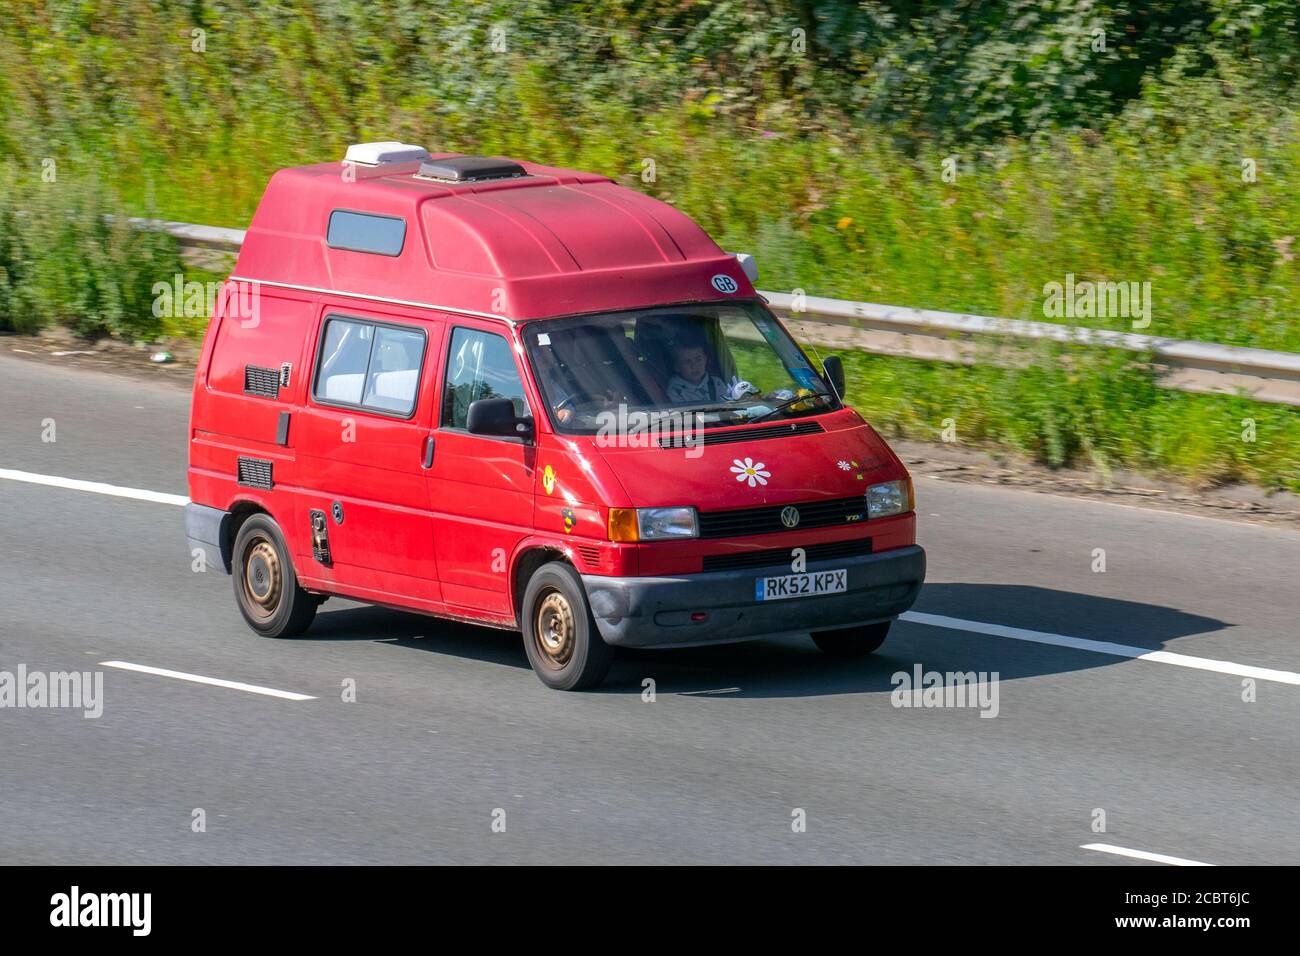 2002 rouge VW Volkswagen transporter TDI SWB; véhicules mobiles de circulation automobile, voitures conduisant des véhicules sur les routes du Royaume-Uni, moteurs, conduite sur le réseau d'autoroute M6. Banque D'Images